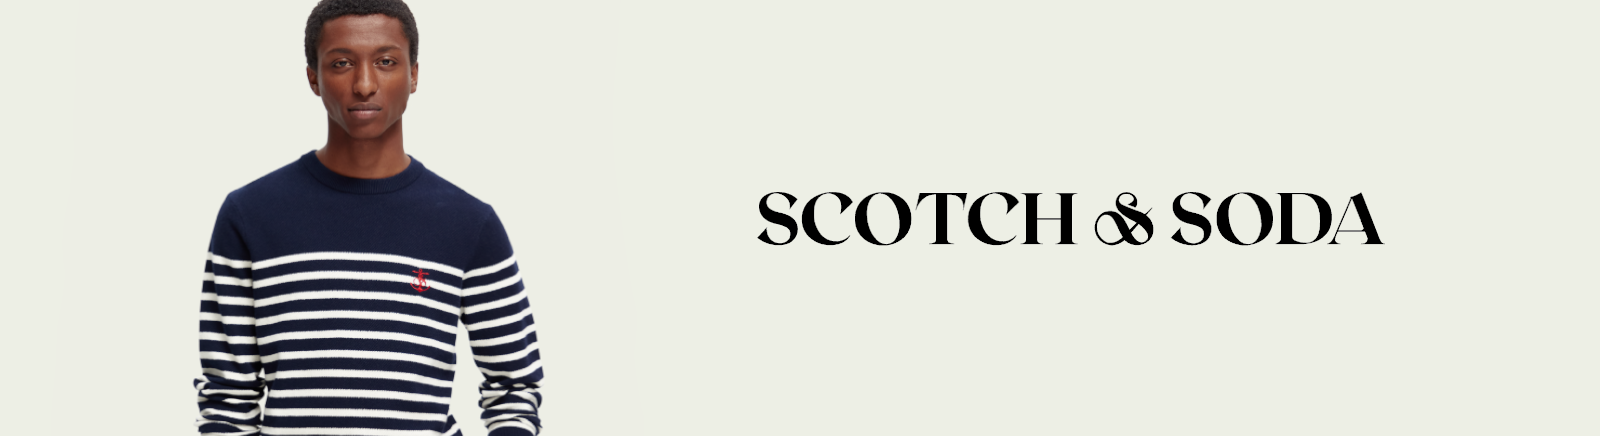 Scotch & Soda Chelsea Boots für Damen im Online-Shop von GISY kaufen